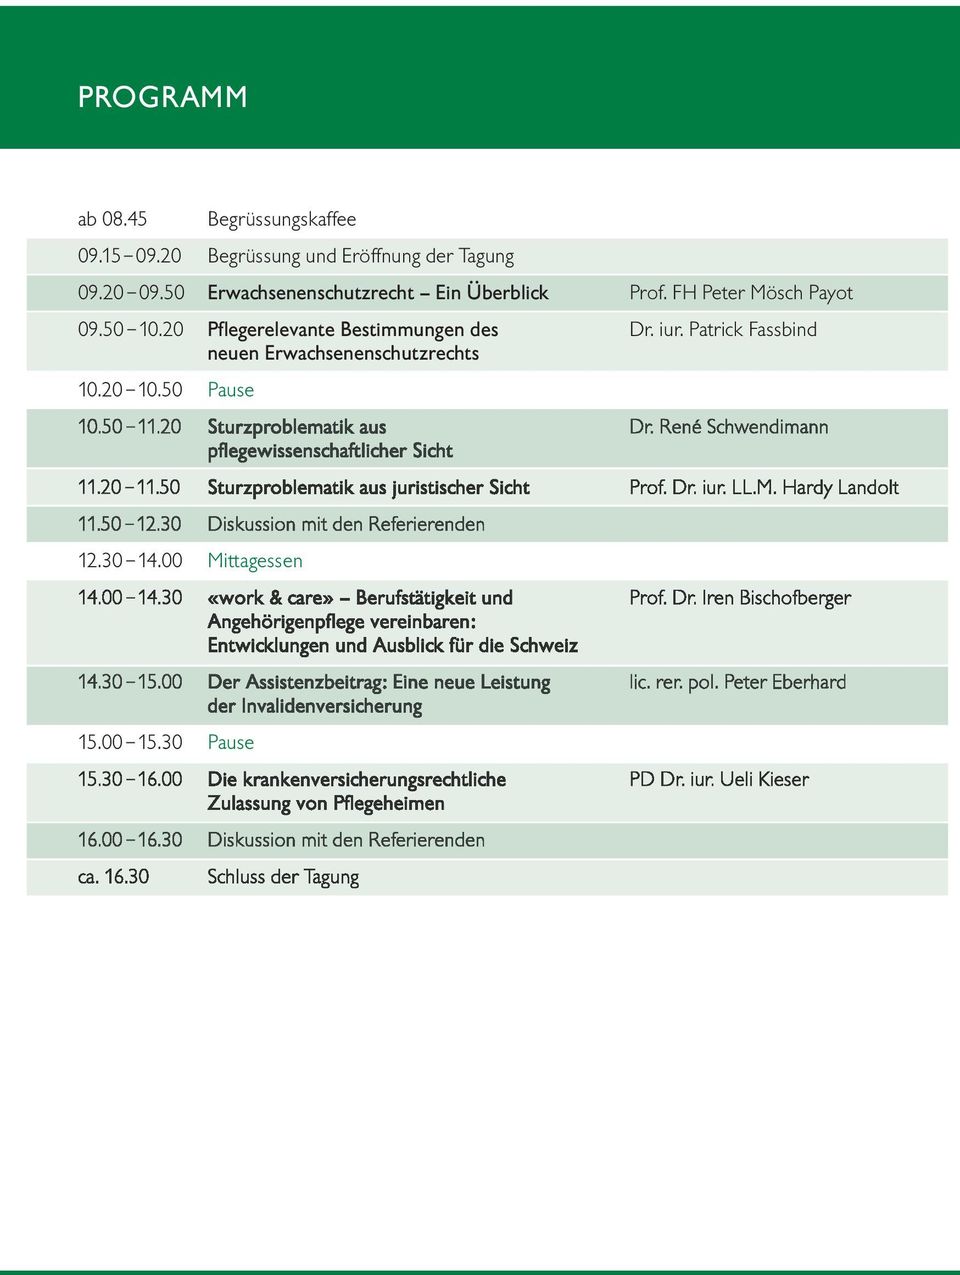 20 11.50 Sturzproblematik aus juristischer Sicht Prof. Dr. iur. LL.M. Hardy Landolt 11.50 12.30 Diskussion mit den Referierenden 12.30 14.00 Mittagessen 14.00 14.